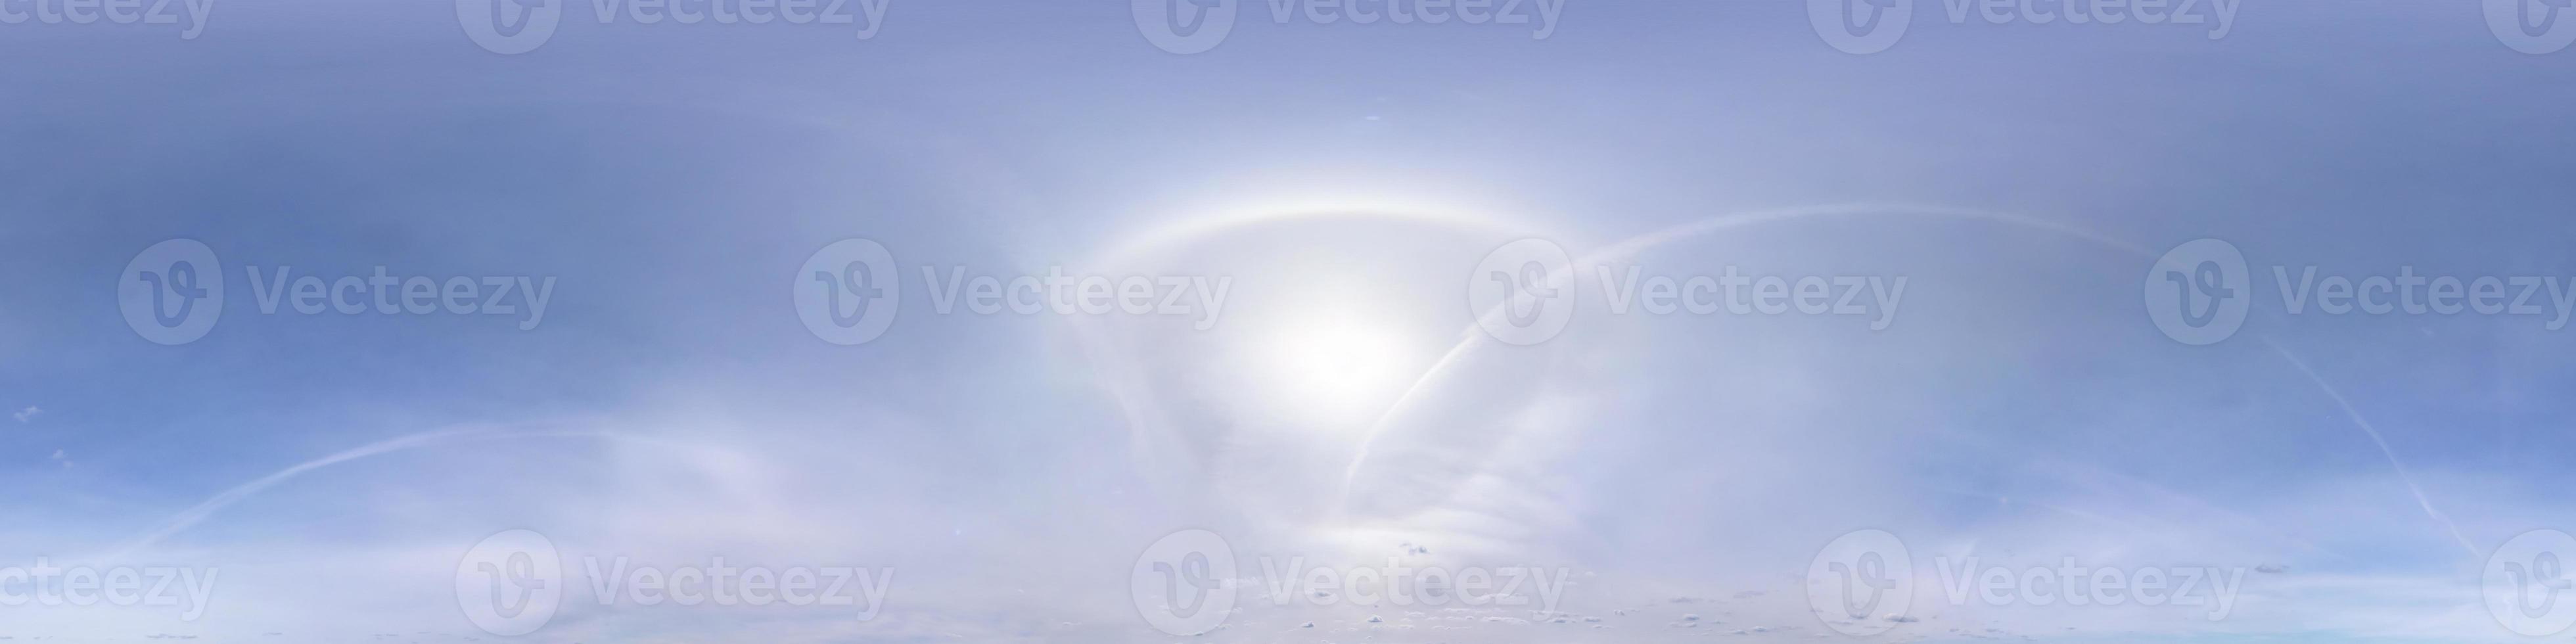 cielo azul claro con sol de halo. vista de ángulo de 360 grados de hdri sin costuras con cenit para usar en gráficos 3d o desarrollo de juegos como cúpula del cielo o editar toma de drones foto